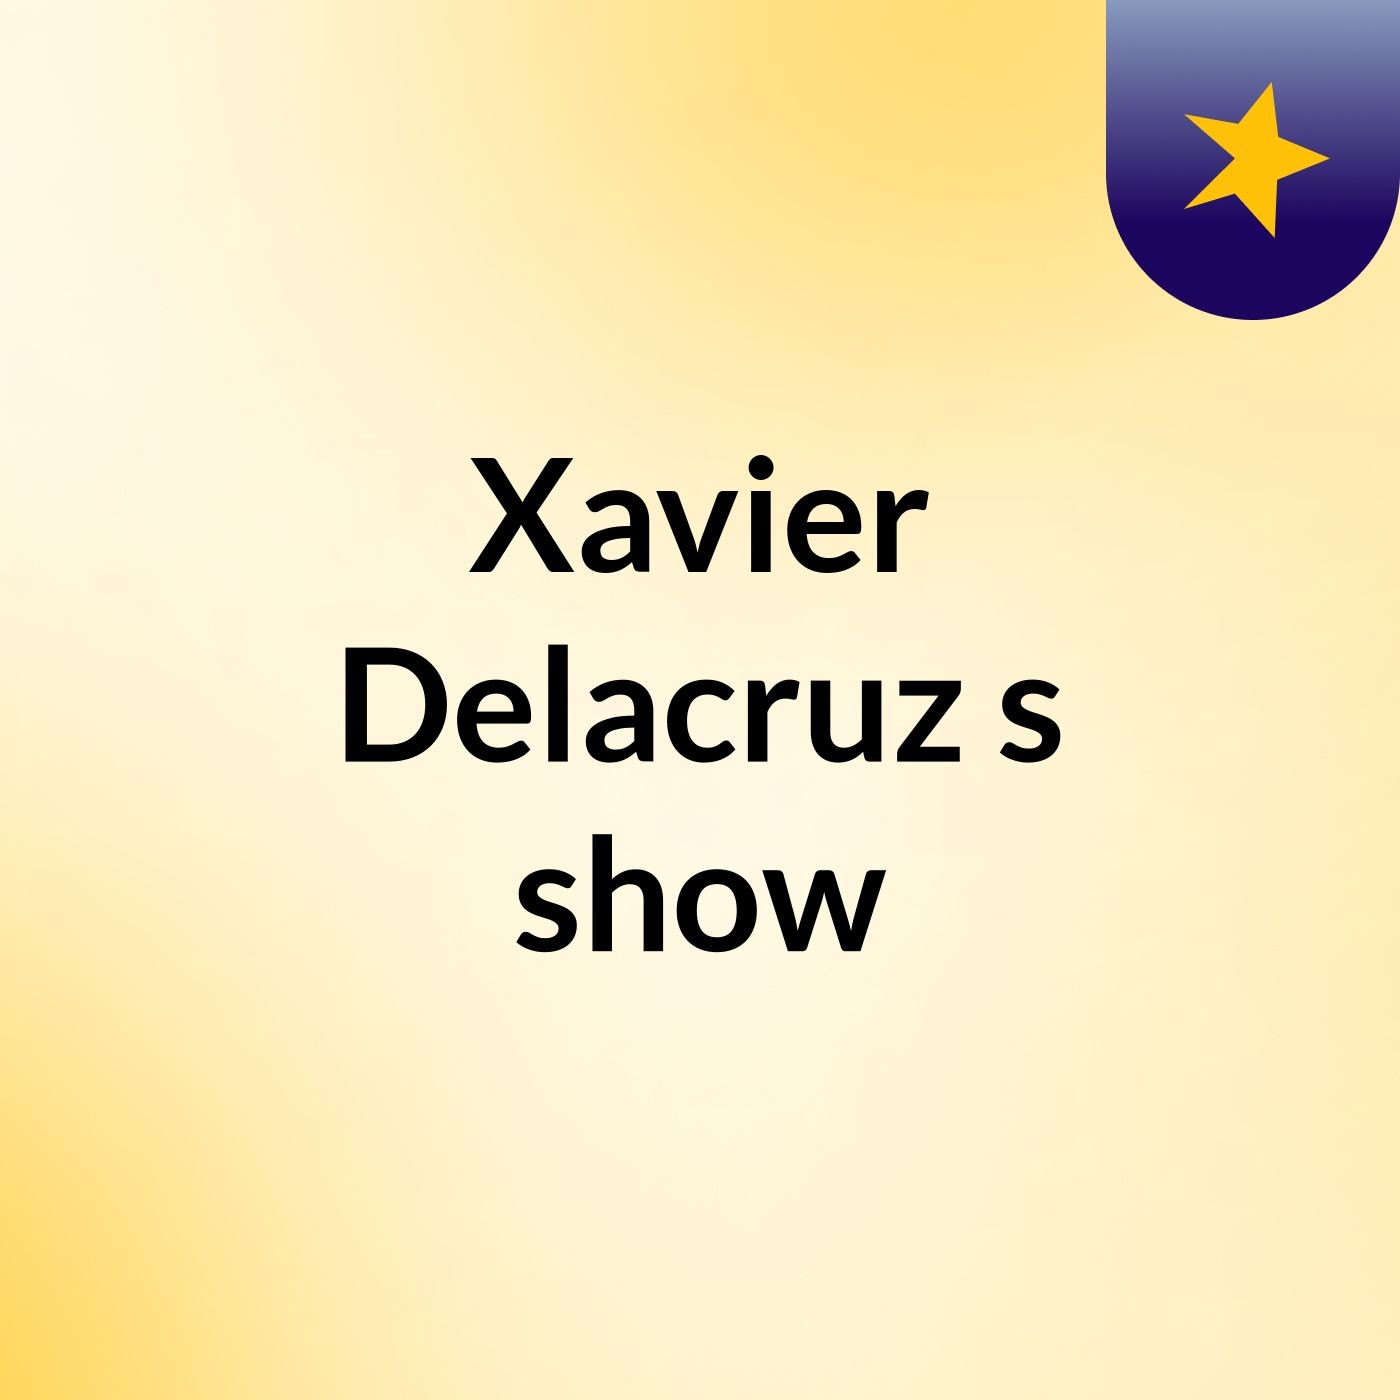 Episode 6 - Xavier Delacruz's show